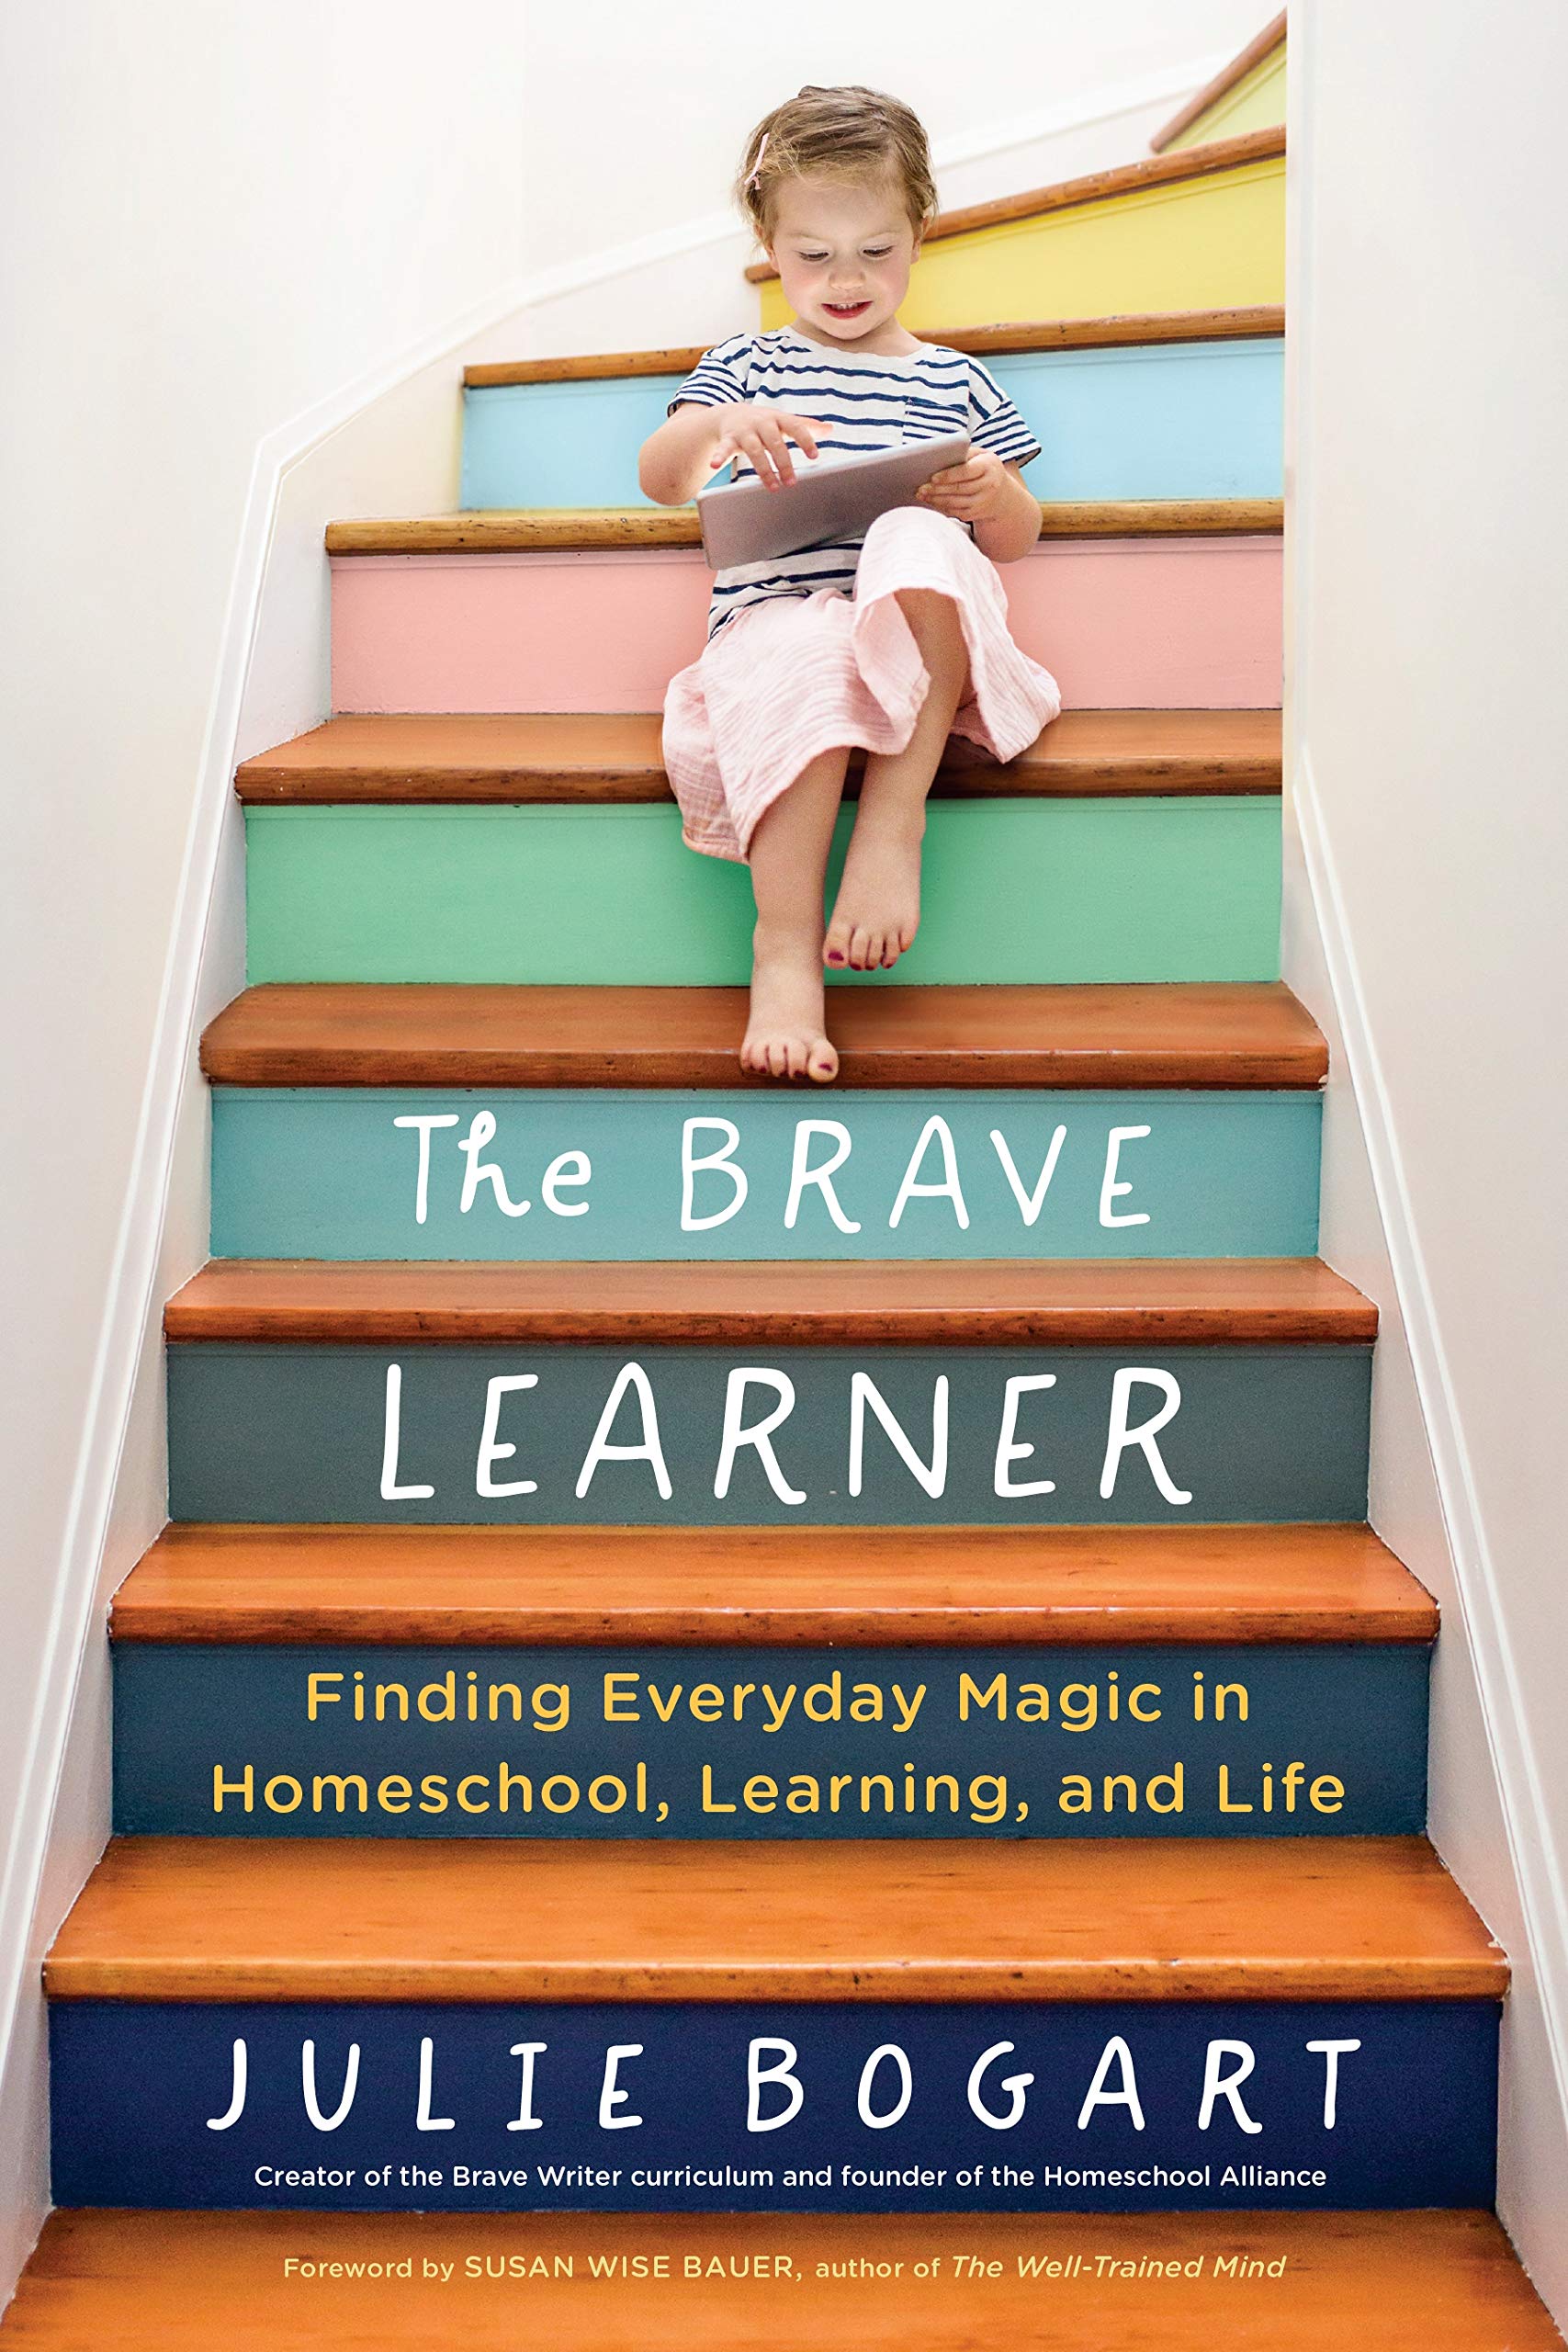 The Brave Learner by Julie Bogart